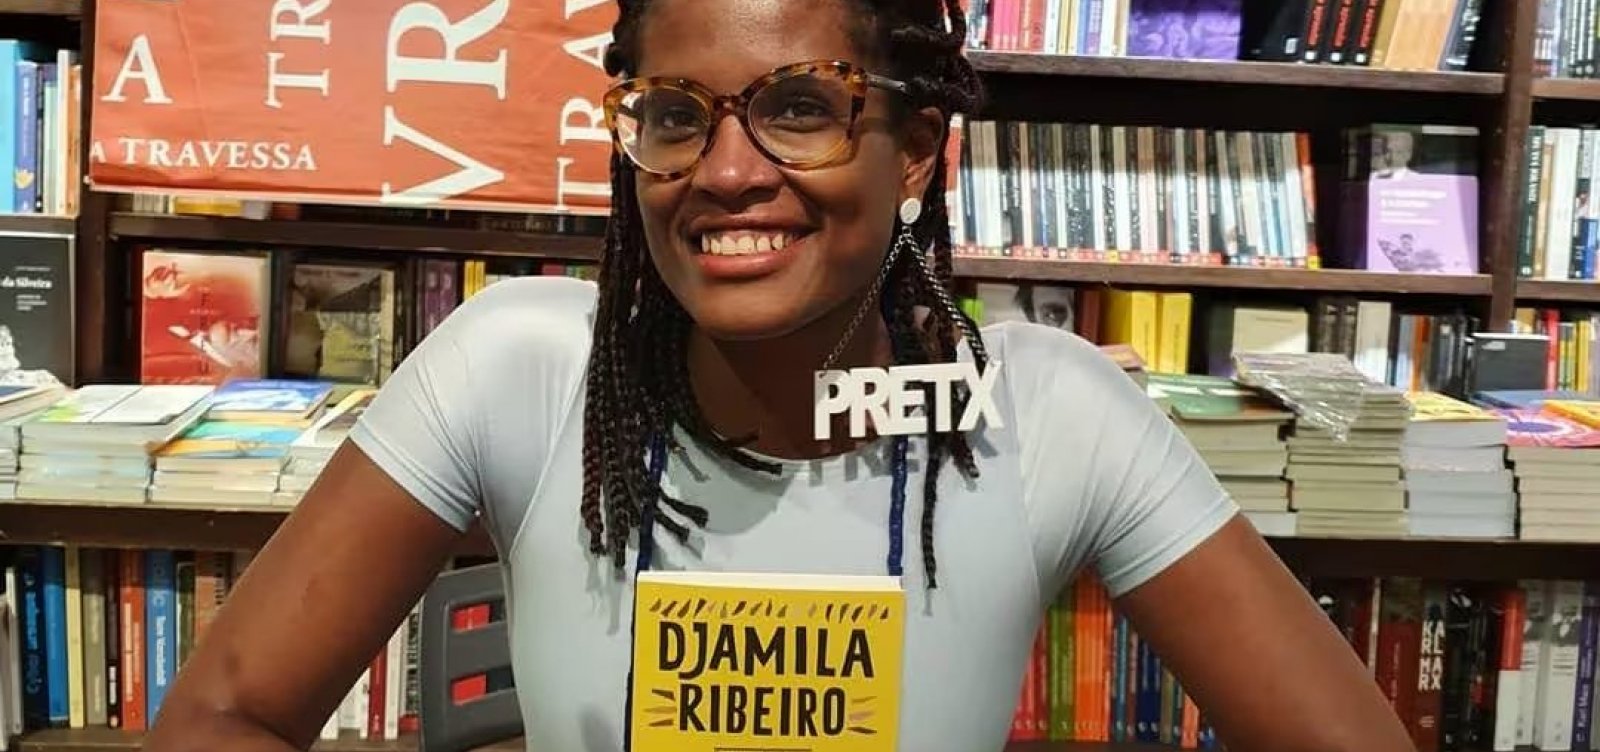 Conheça o livro de Djamila Ribeiro que foi alvo de polêmica em colégio particular em Salvador 